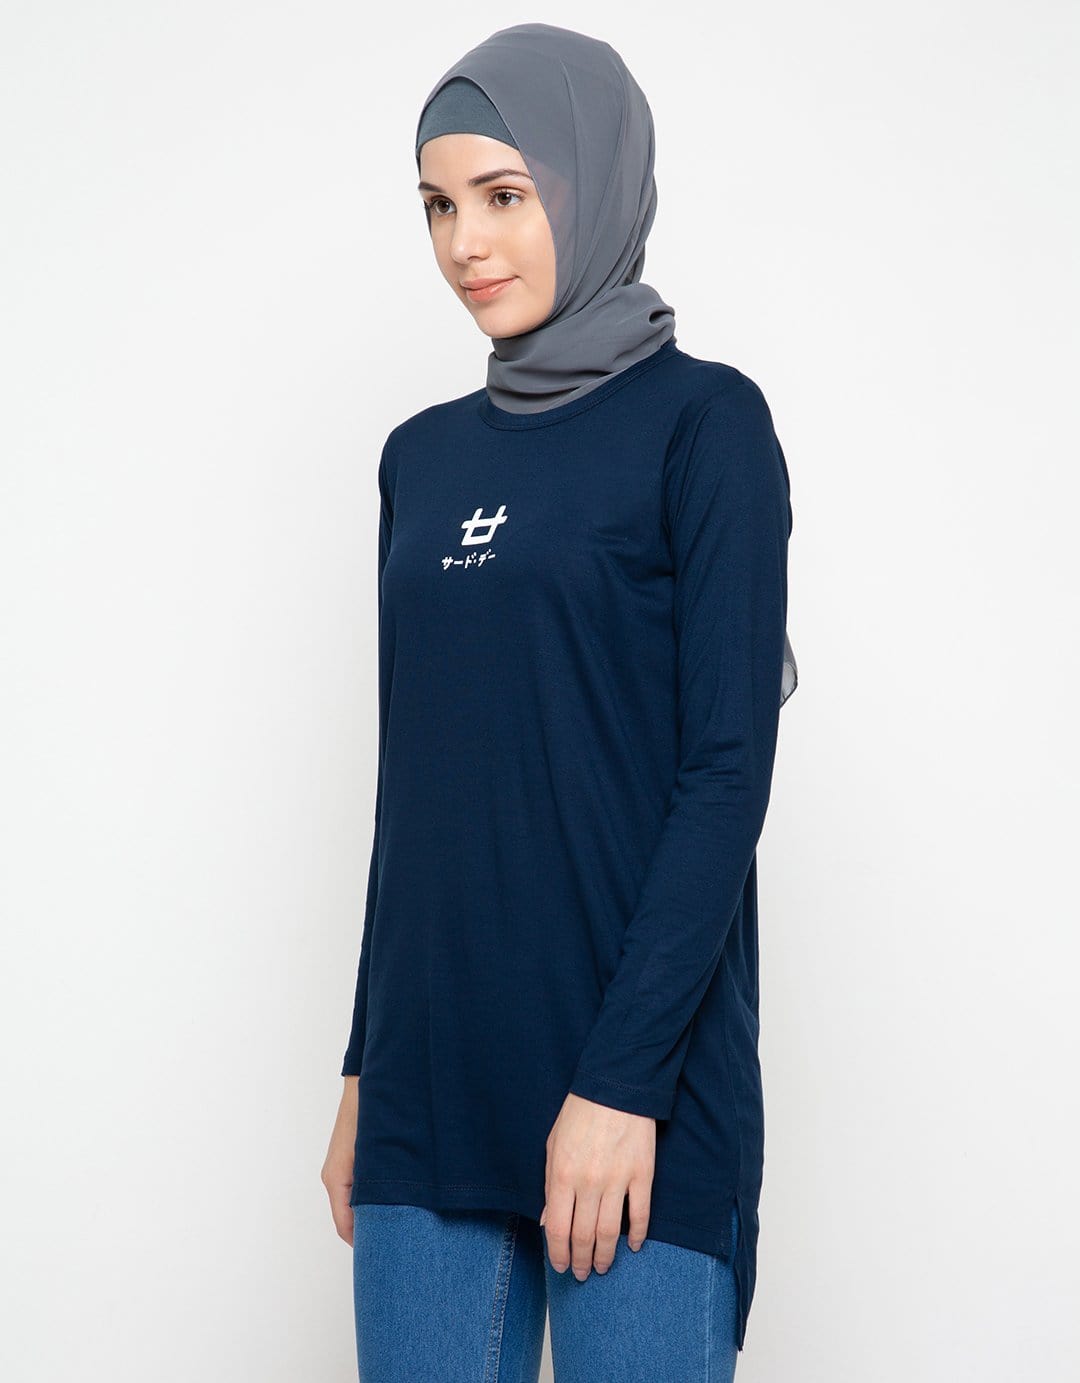 Third Day LTC92 mls logo dateng navy hijab lengan panjang wanita